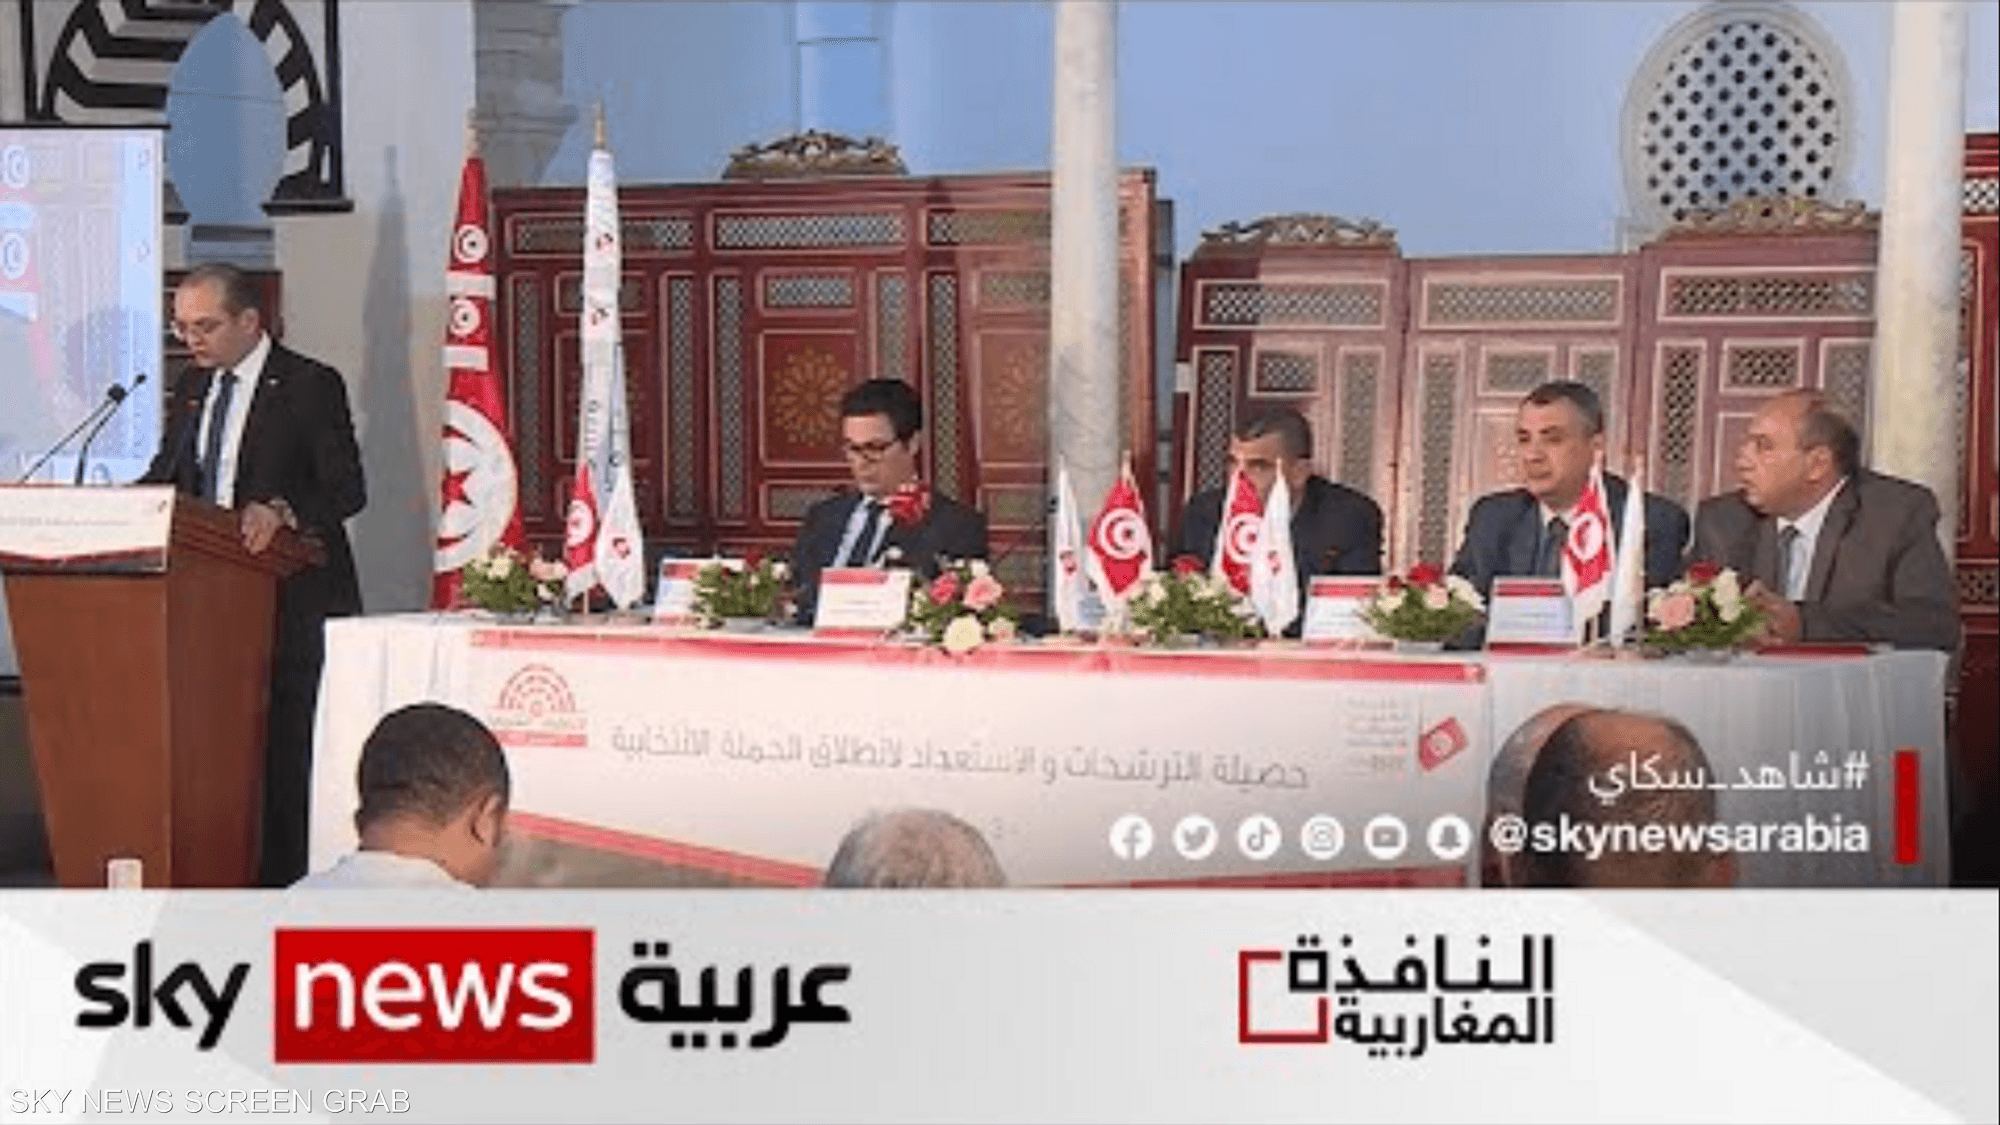 الدعاية الانتخابية في تونس تنطلق يوم 25 نوفمبر